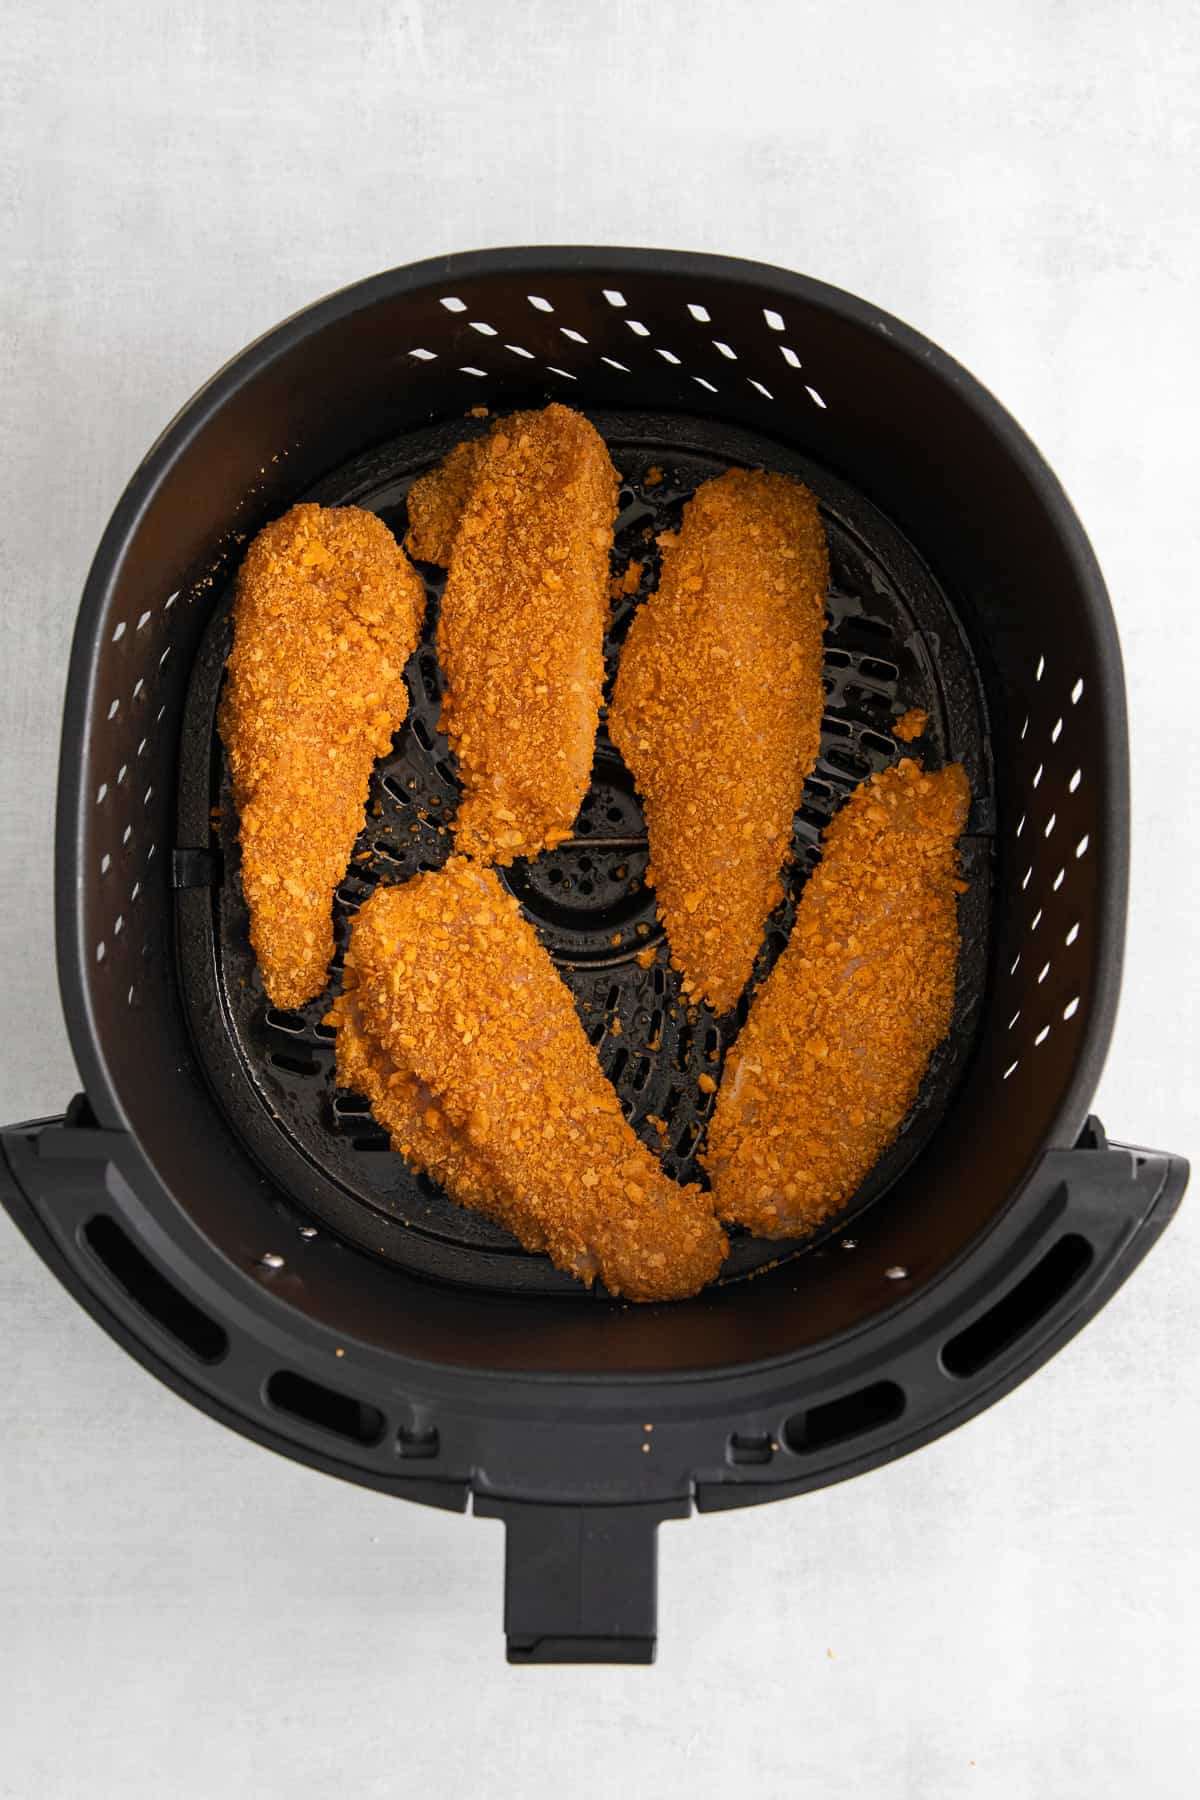 Cheez-it breaded chicken fingers in an air fryer.